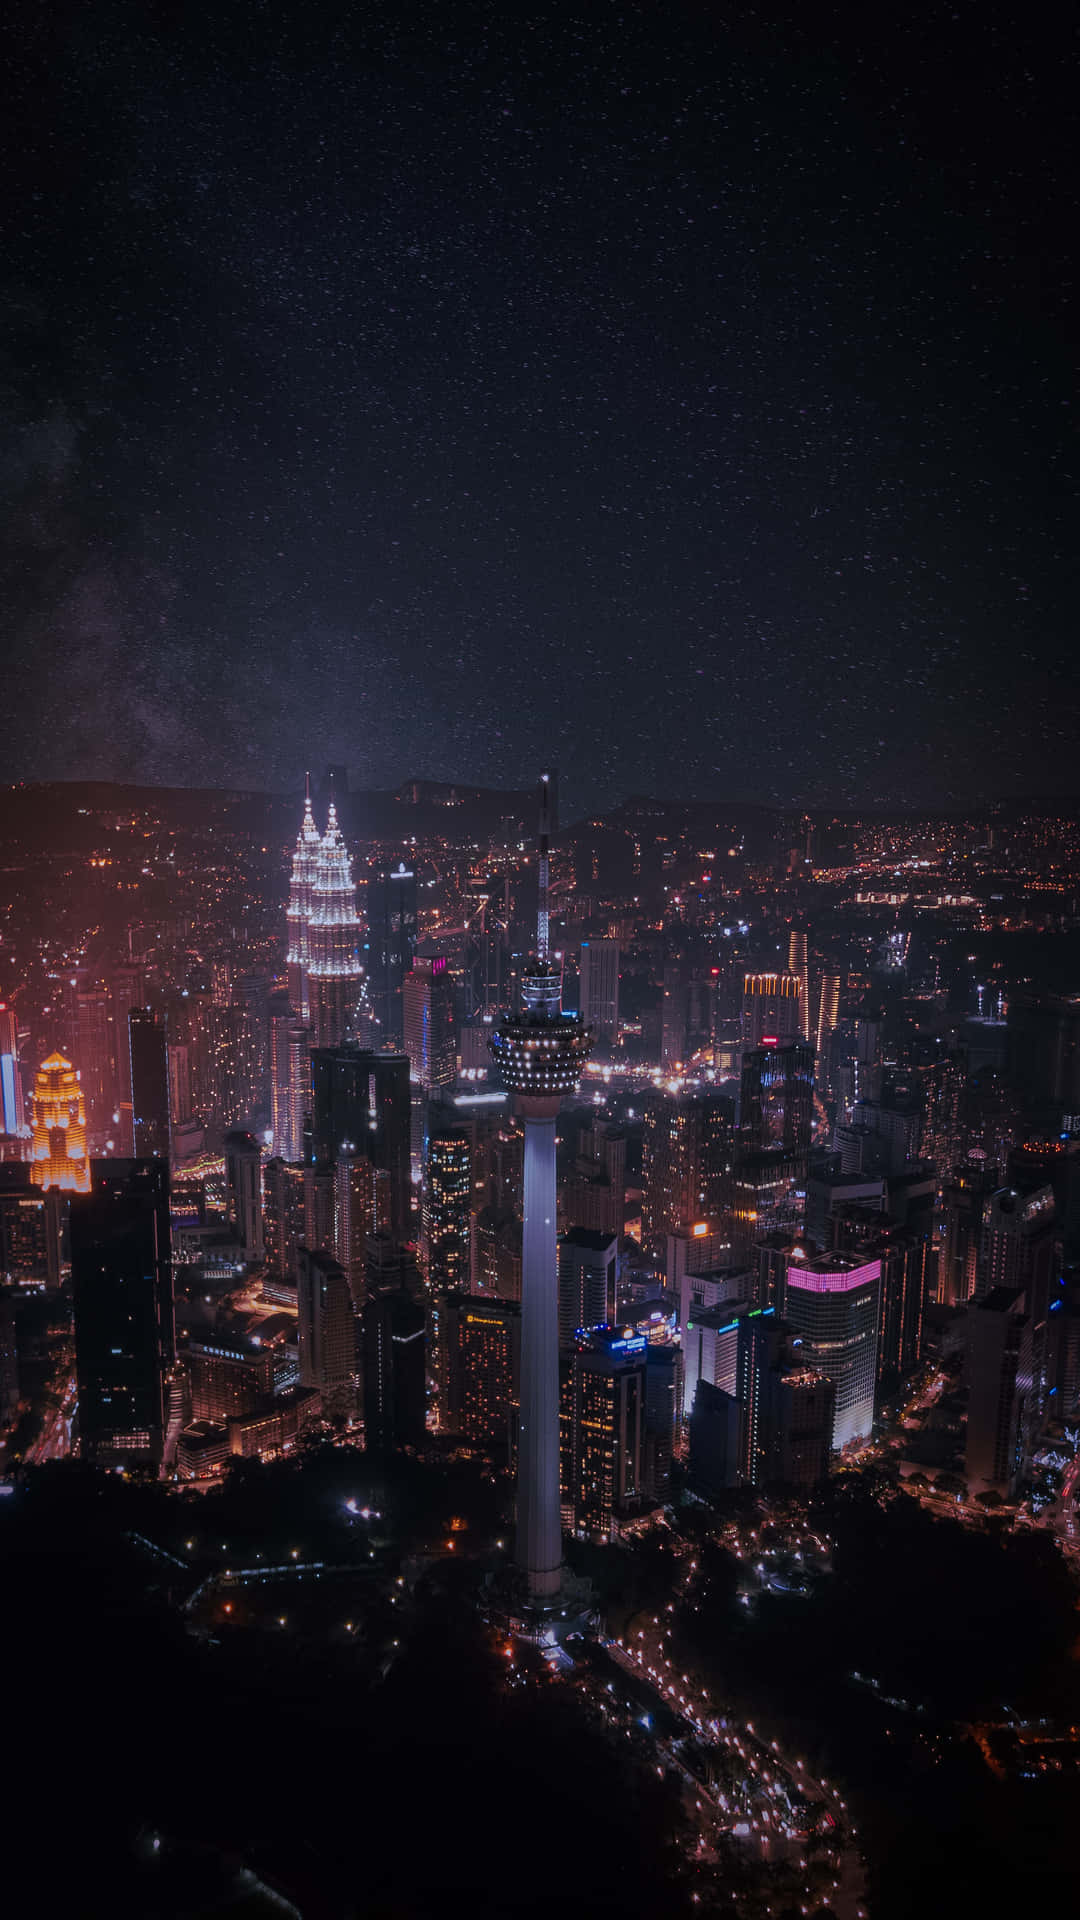 billede af nattebyens Kuala Lumpur